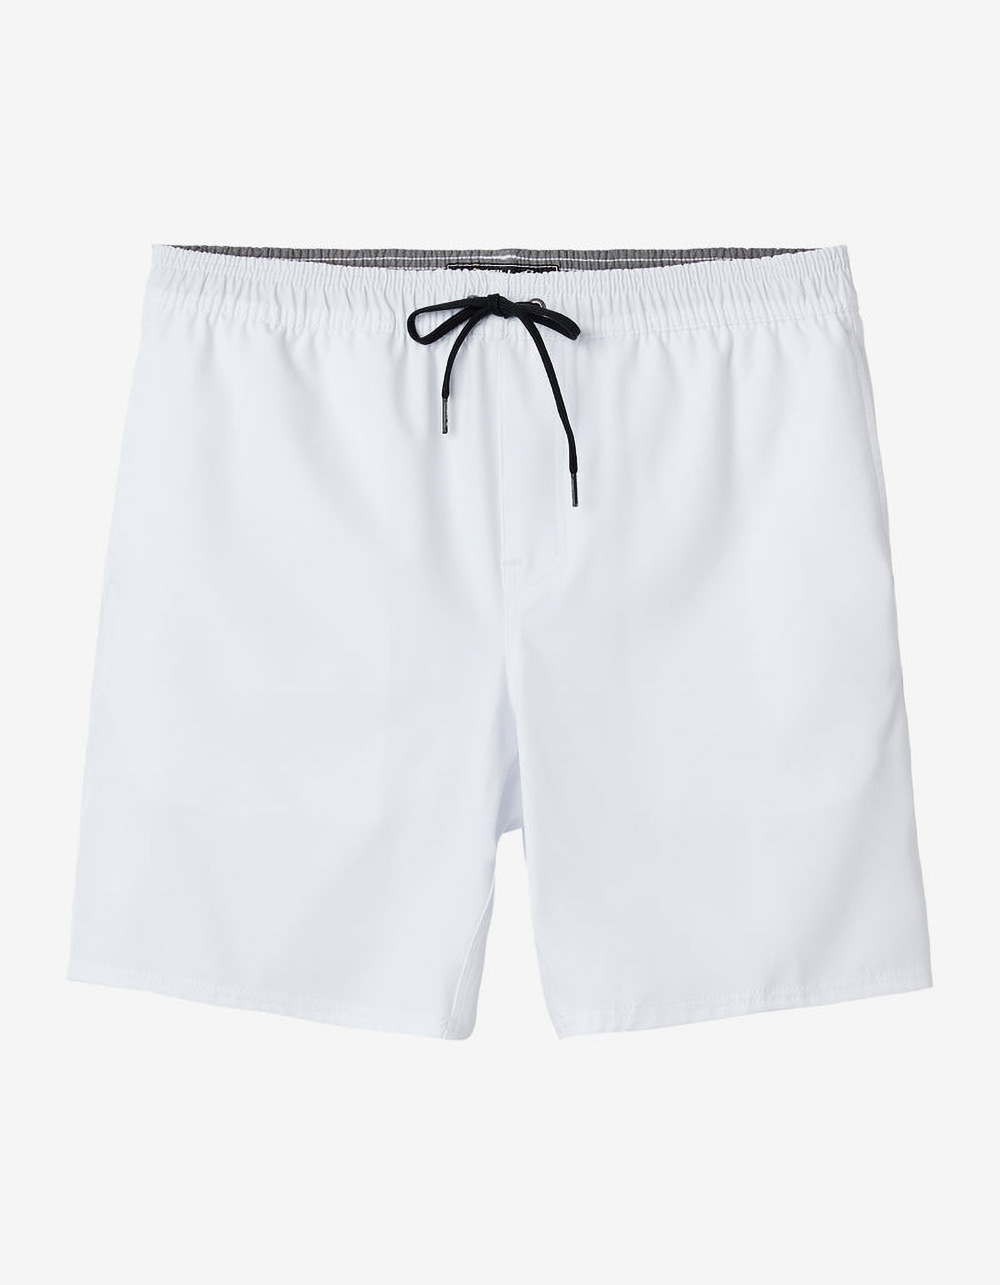 Men's Hybrid Shorts